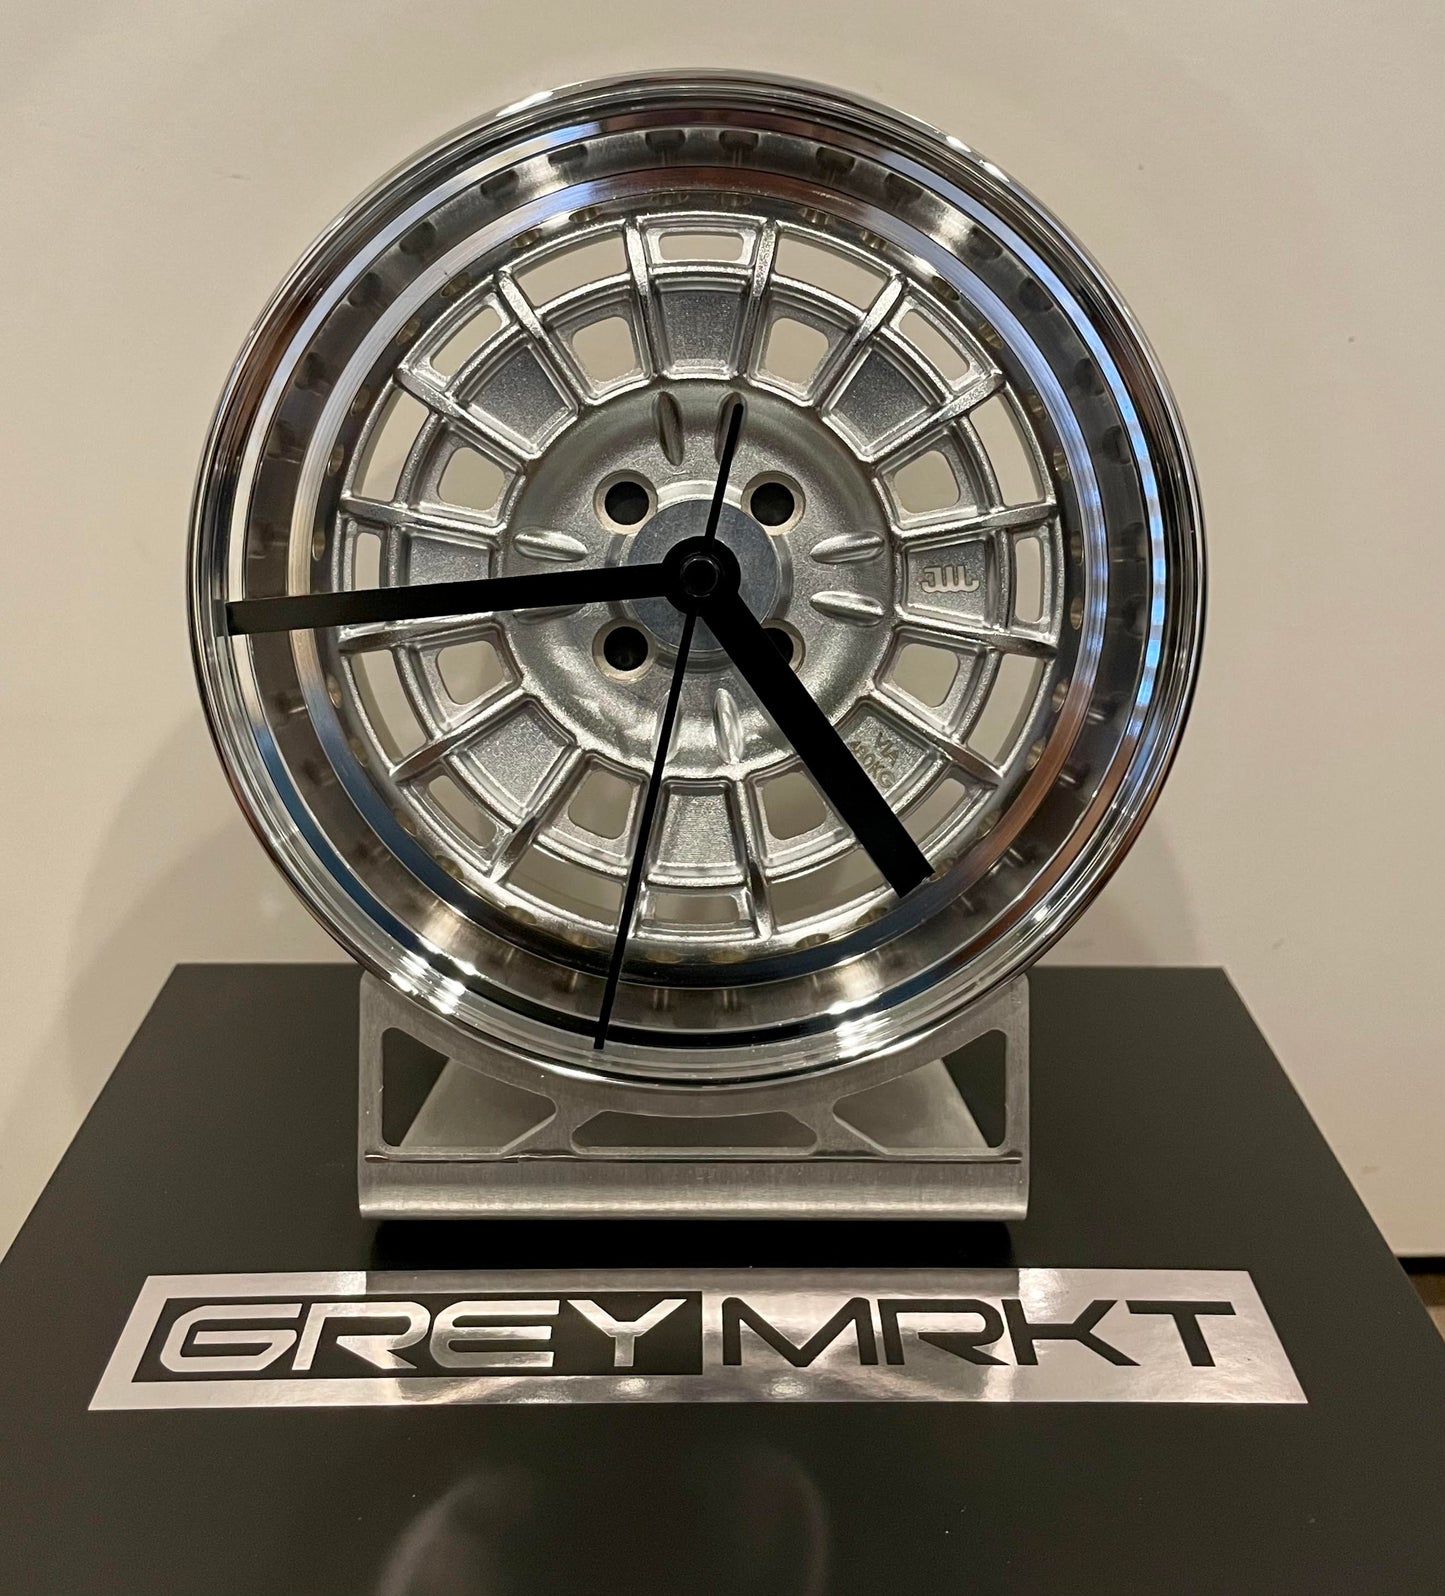 GREYMRKT ﻿1/5 Scale Mugen NR10R inspired wheel clock